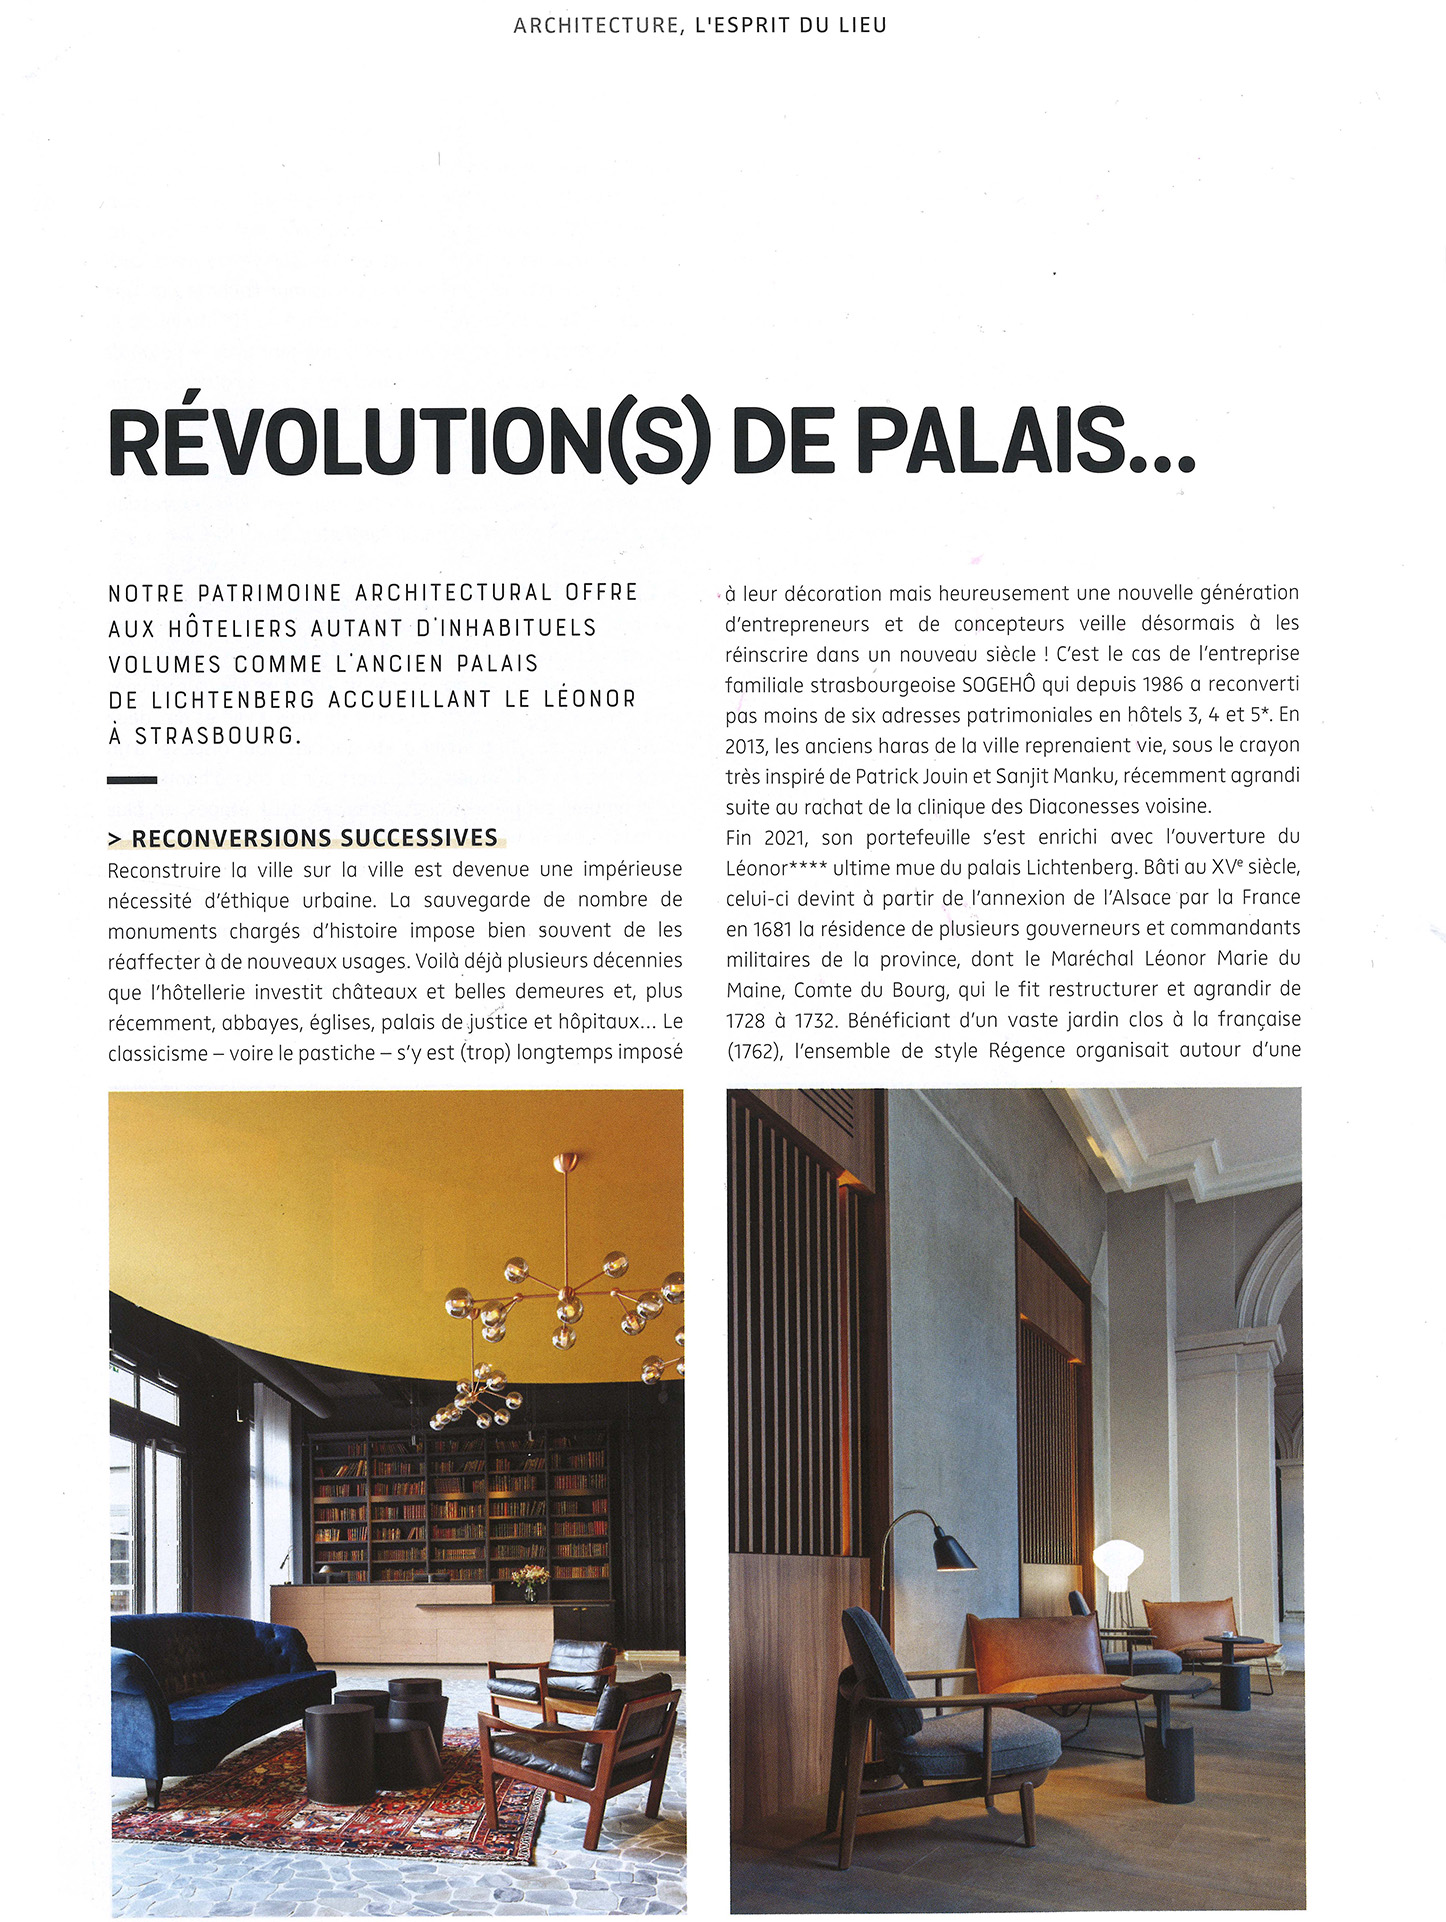 Article de ND Magazine sur la réhabilitation d'un palais de justice à Strasbourg en un hôtel de luxe par le studio jean-philippe nuel